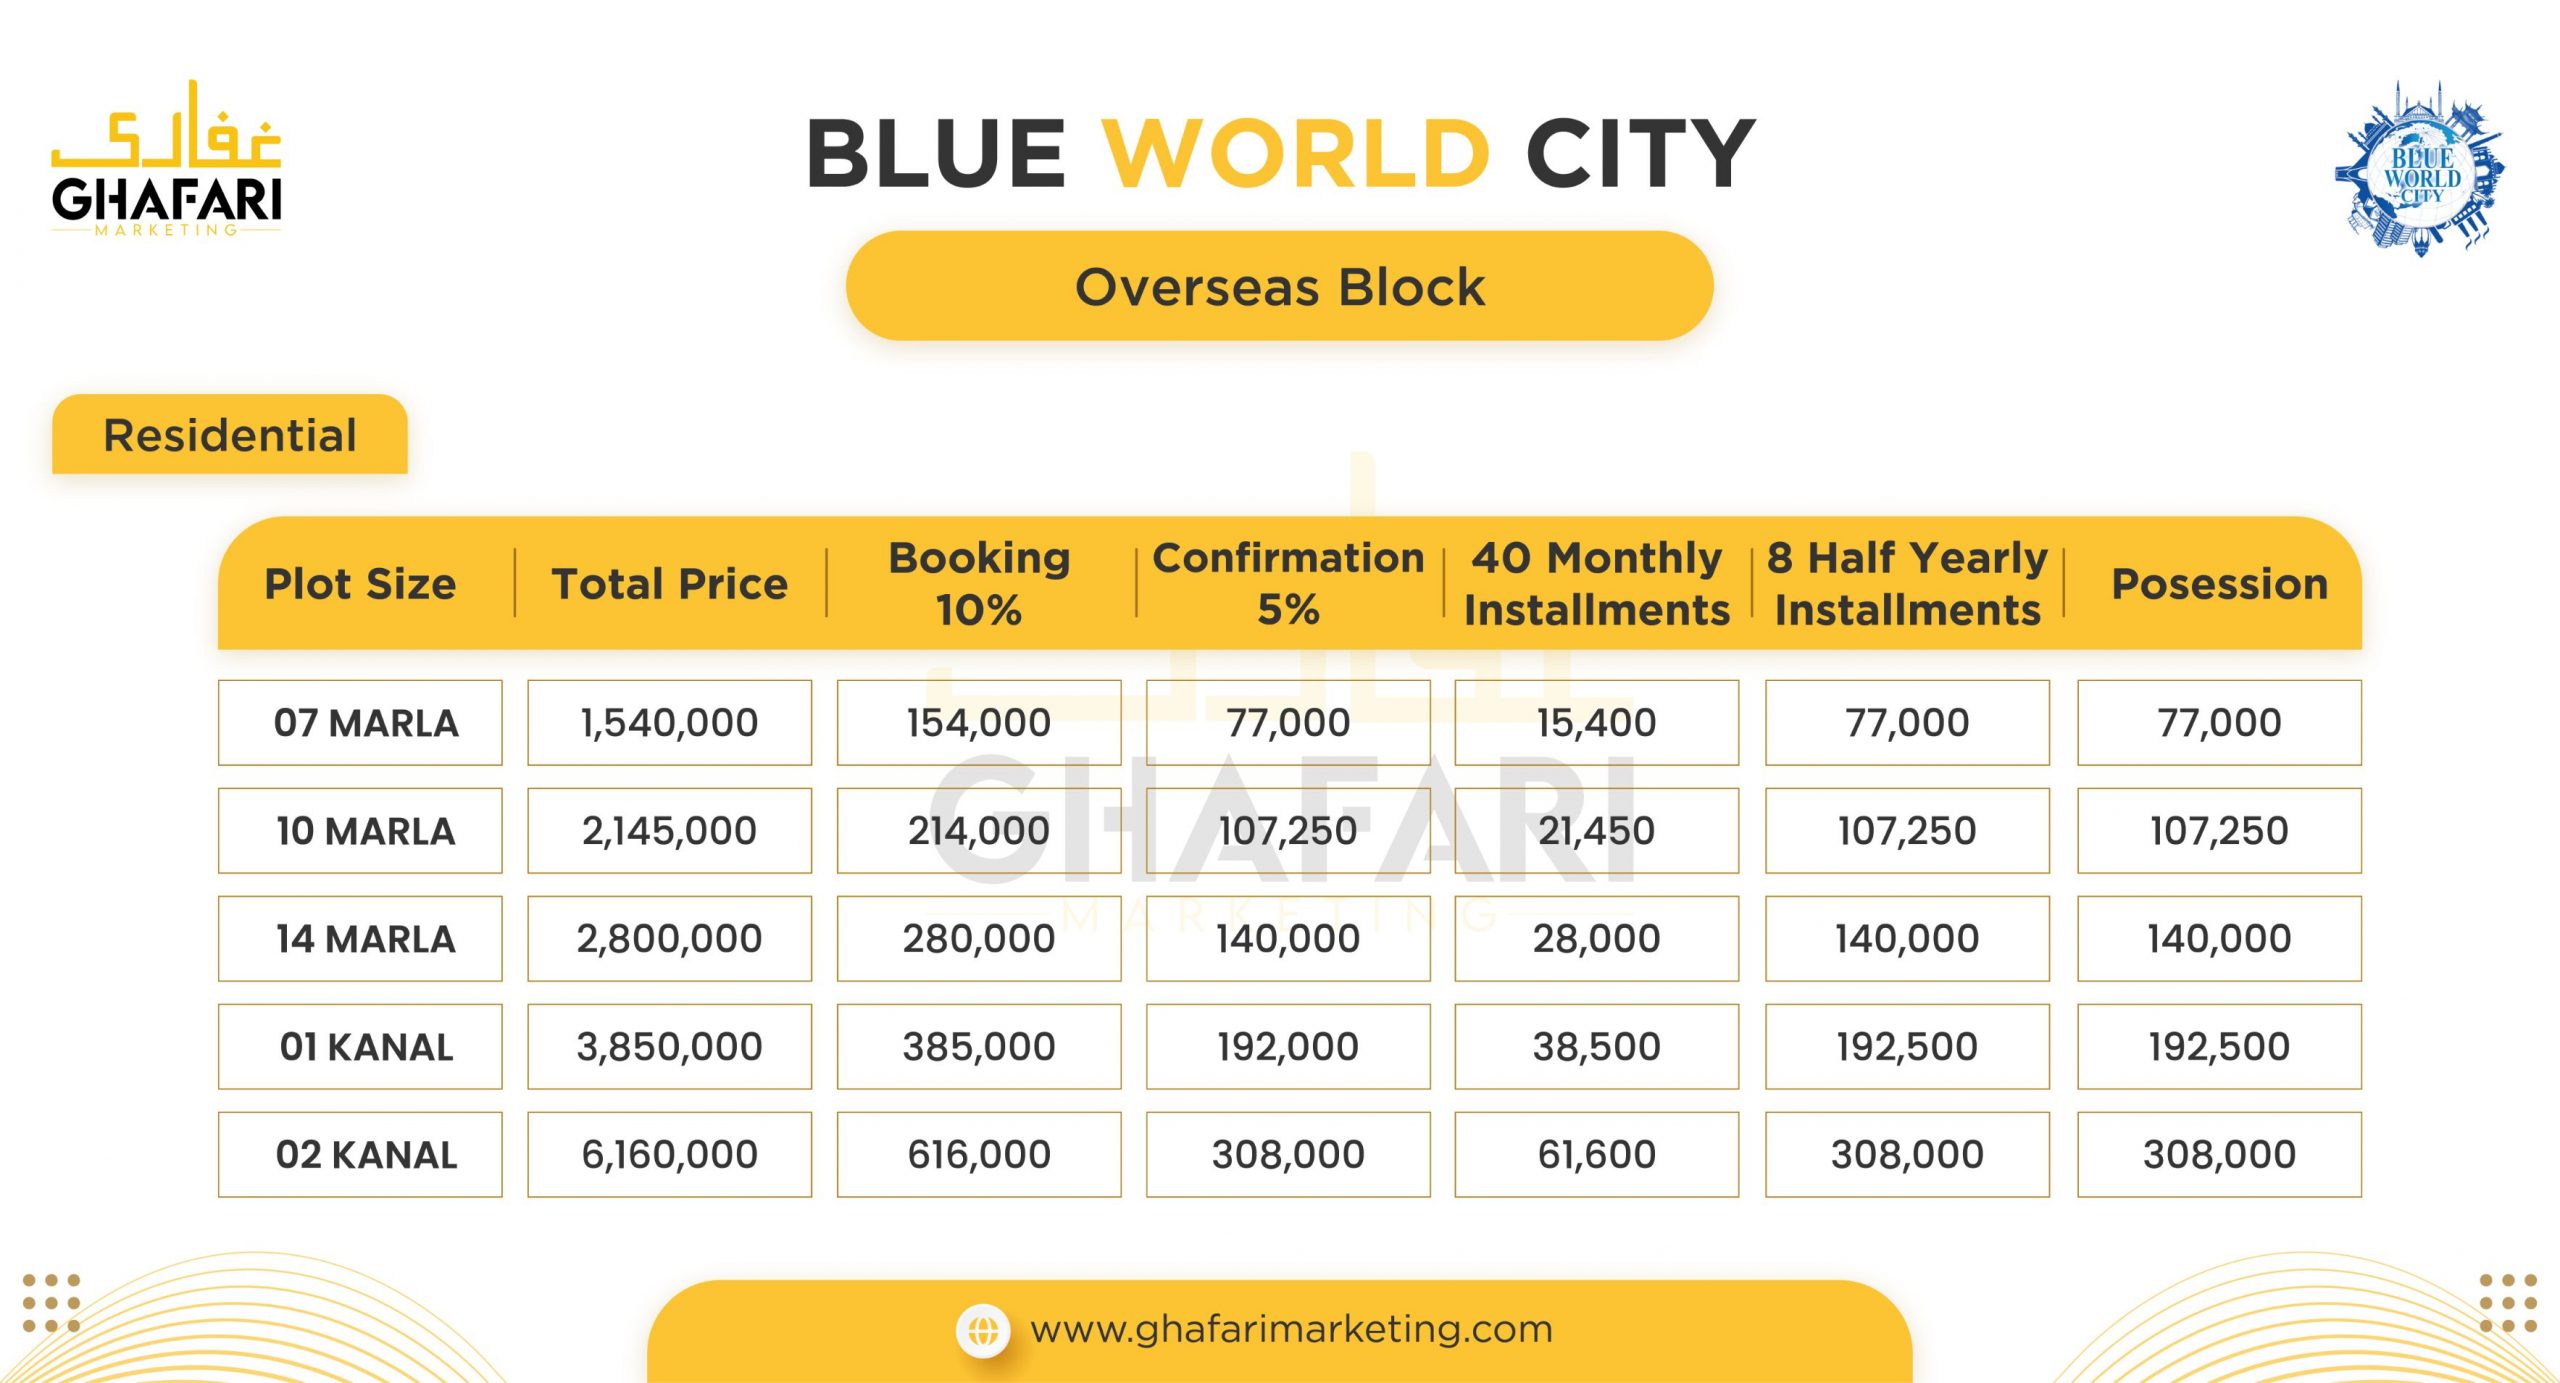 Blue World City Overseas Block Payment Plan